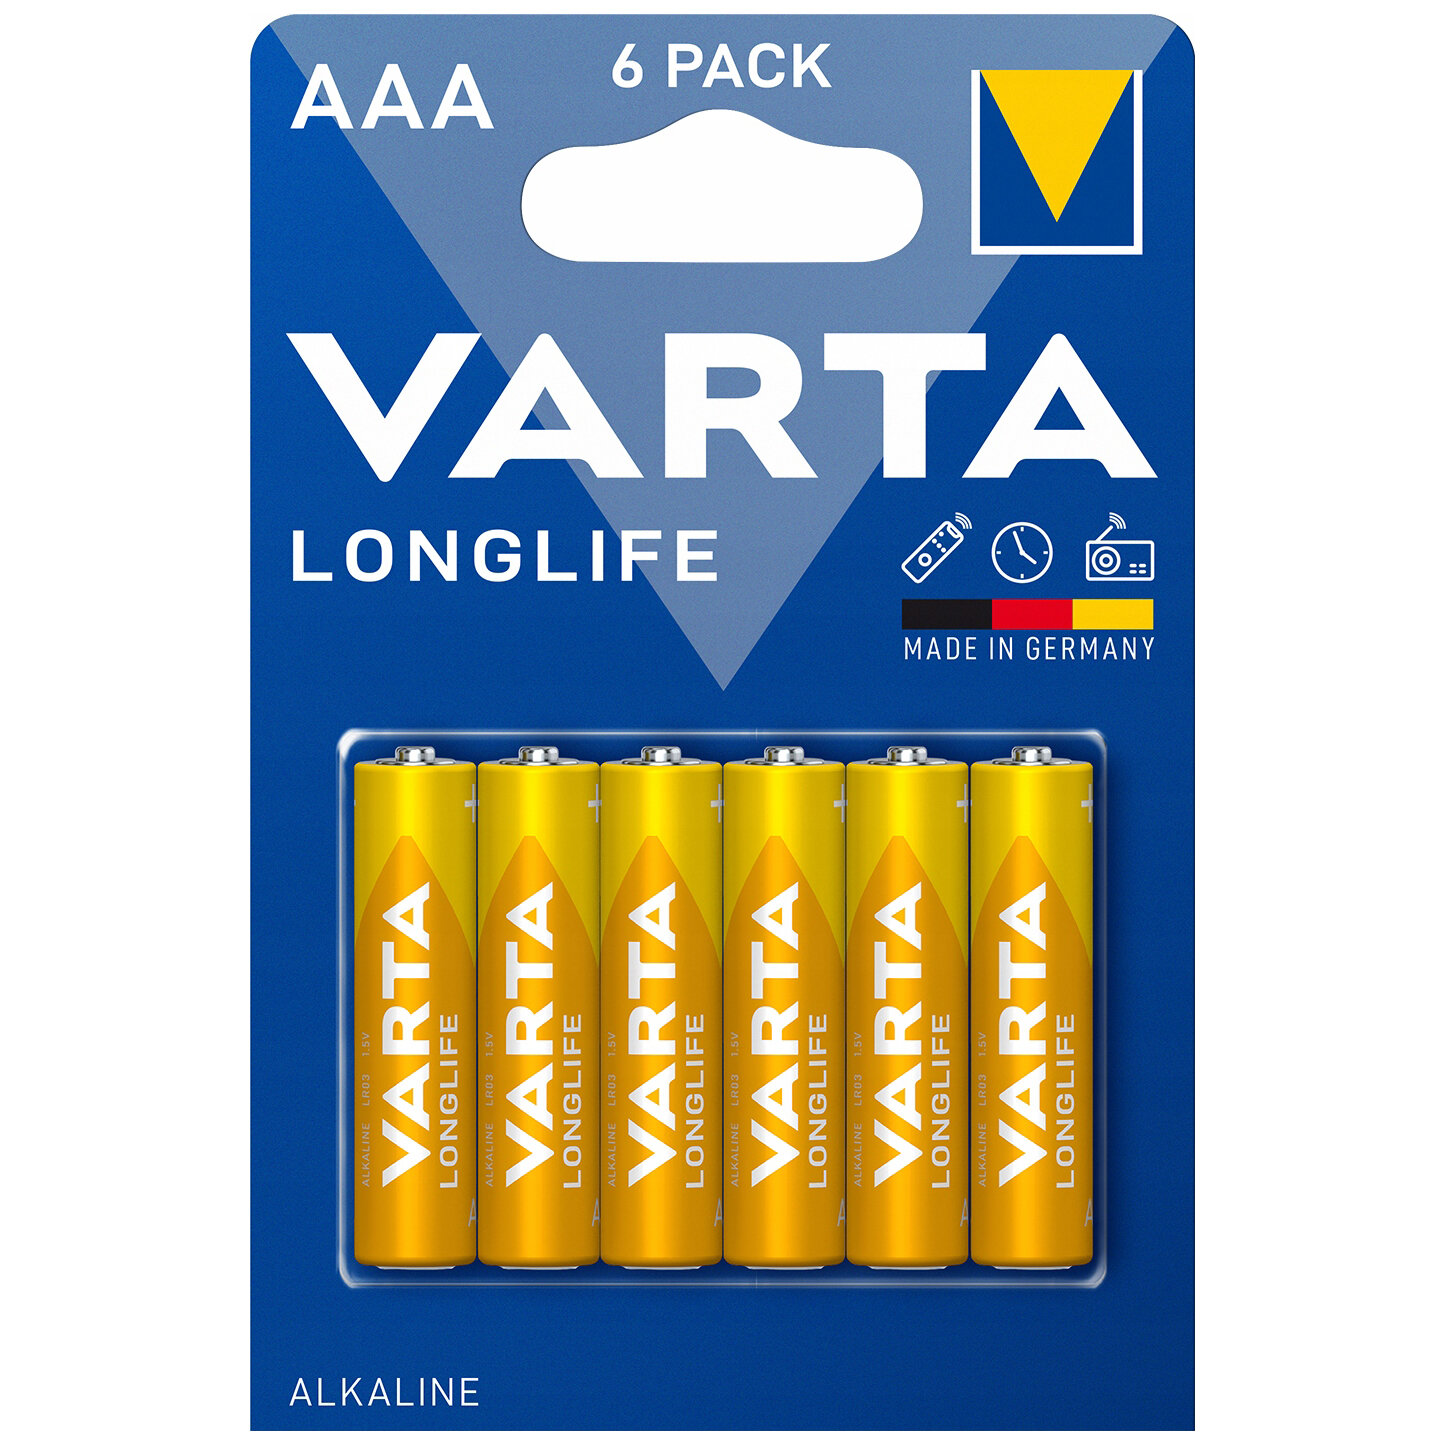 Батарейки Varta Longlife, 04103101416, щелочные, AAA, LR03, 6 шт